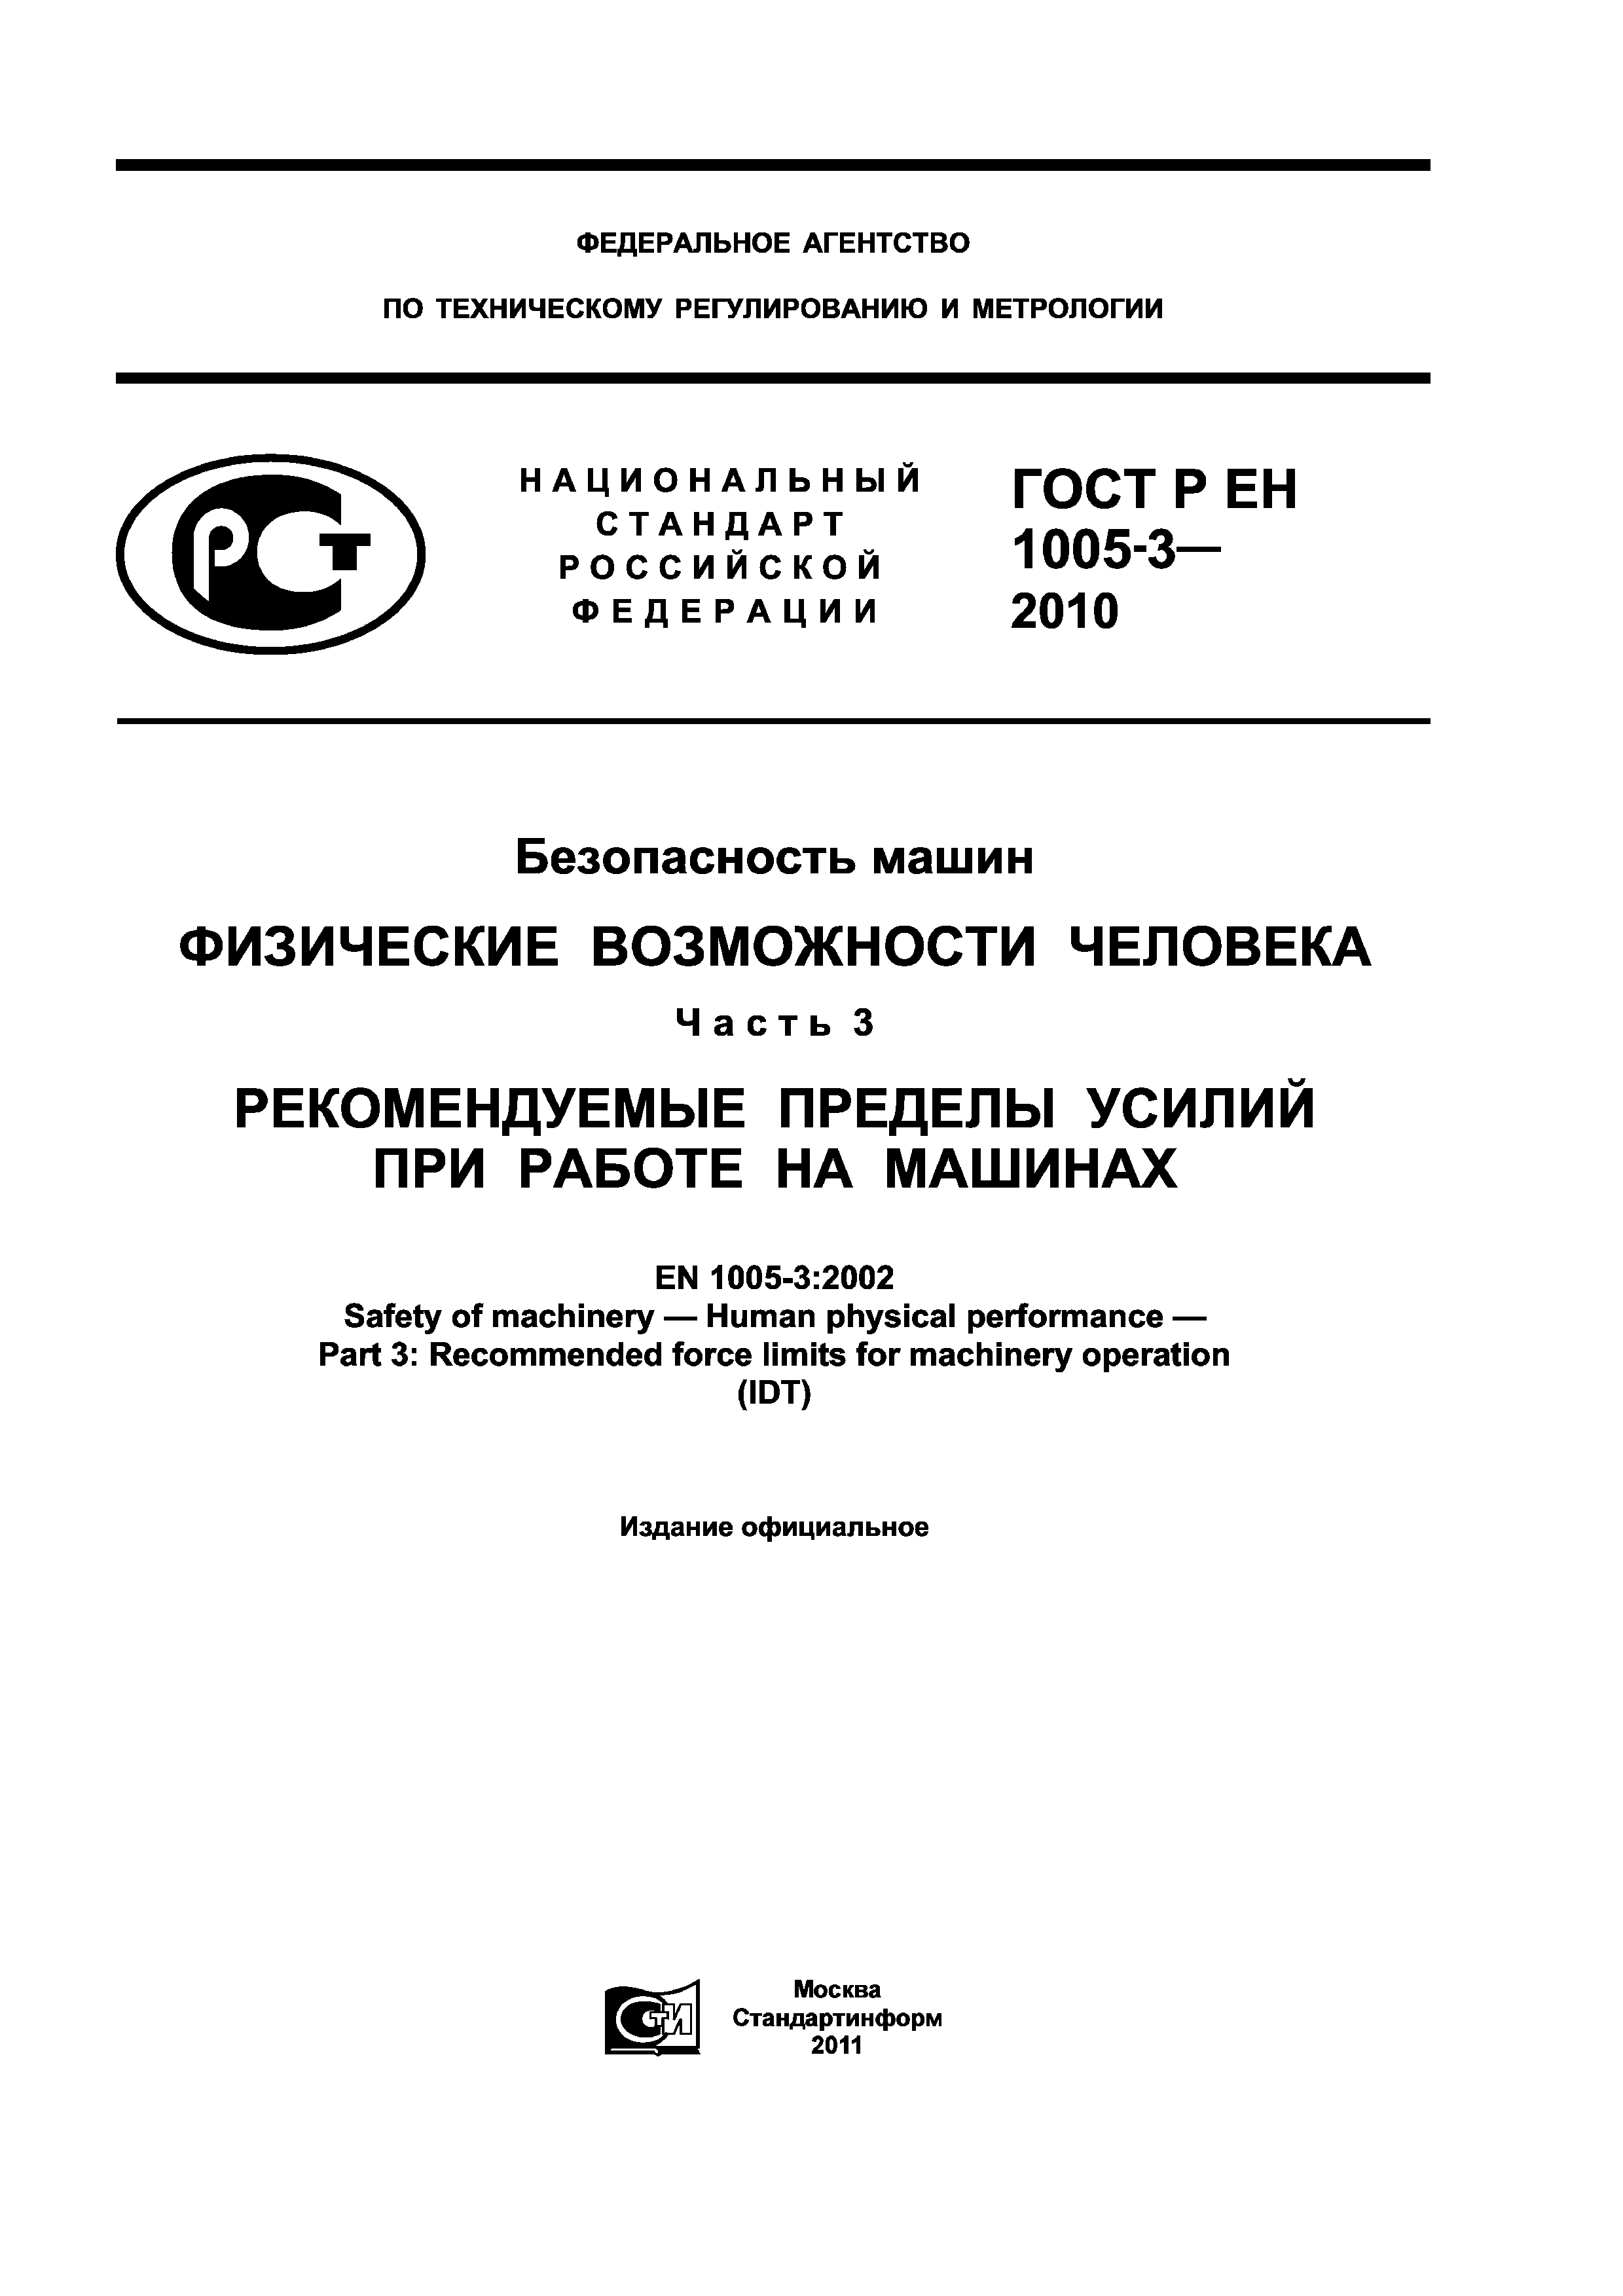 ГОСТ Р ЕН 1005-3-2010